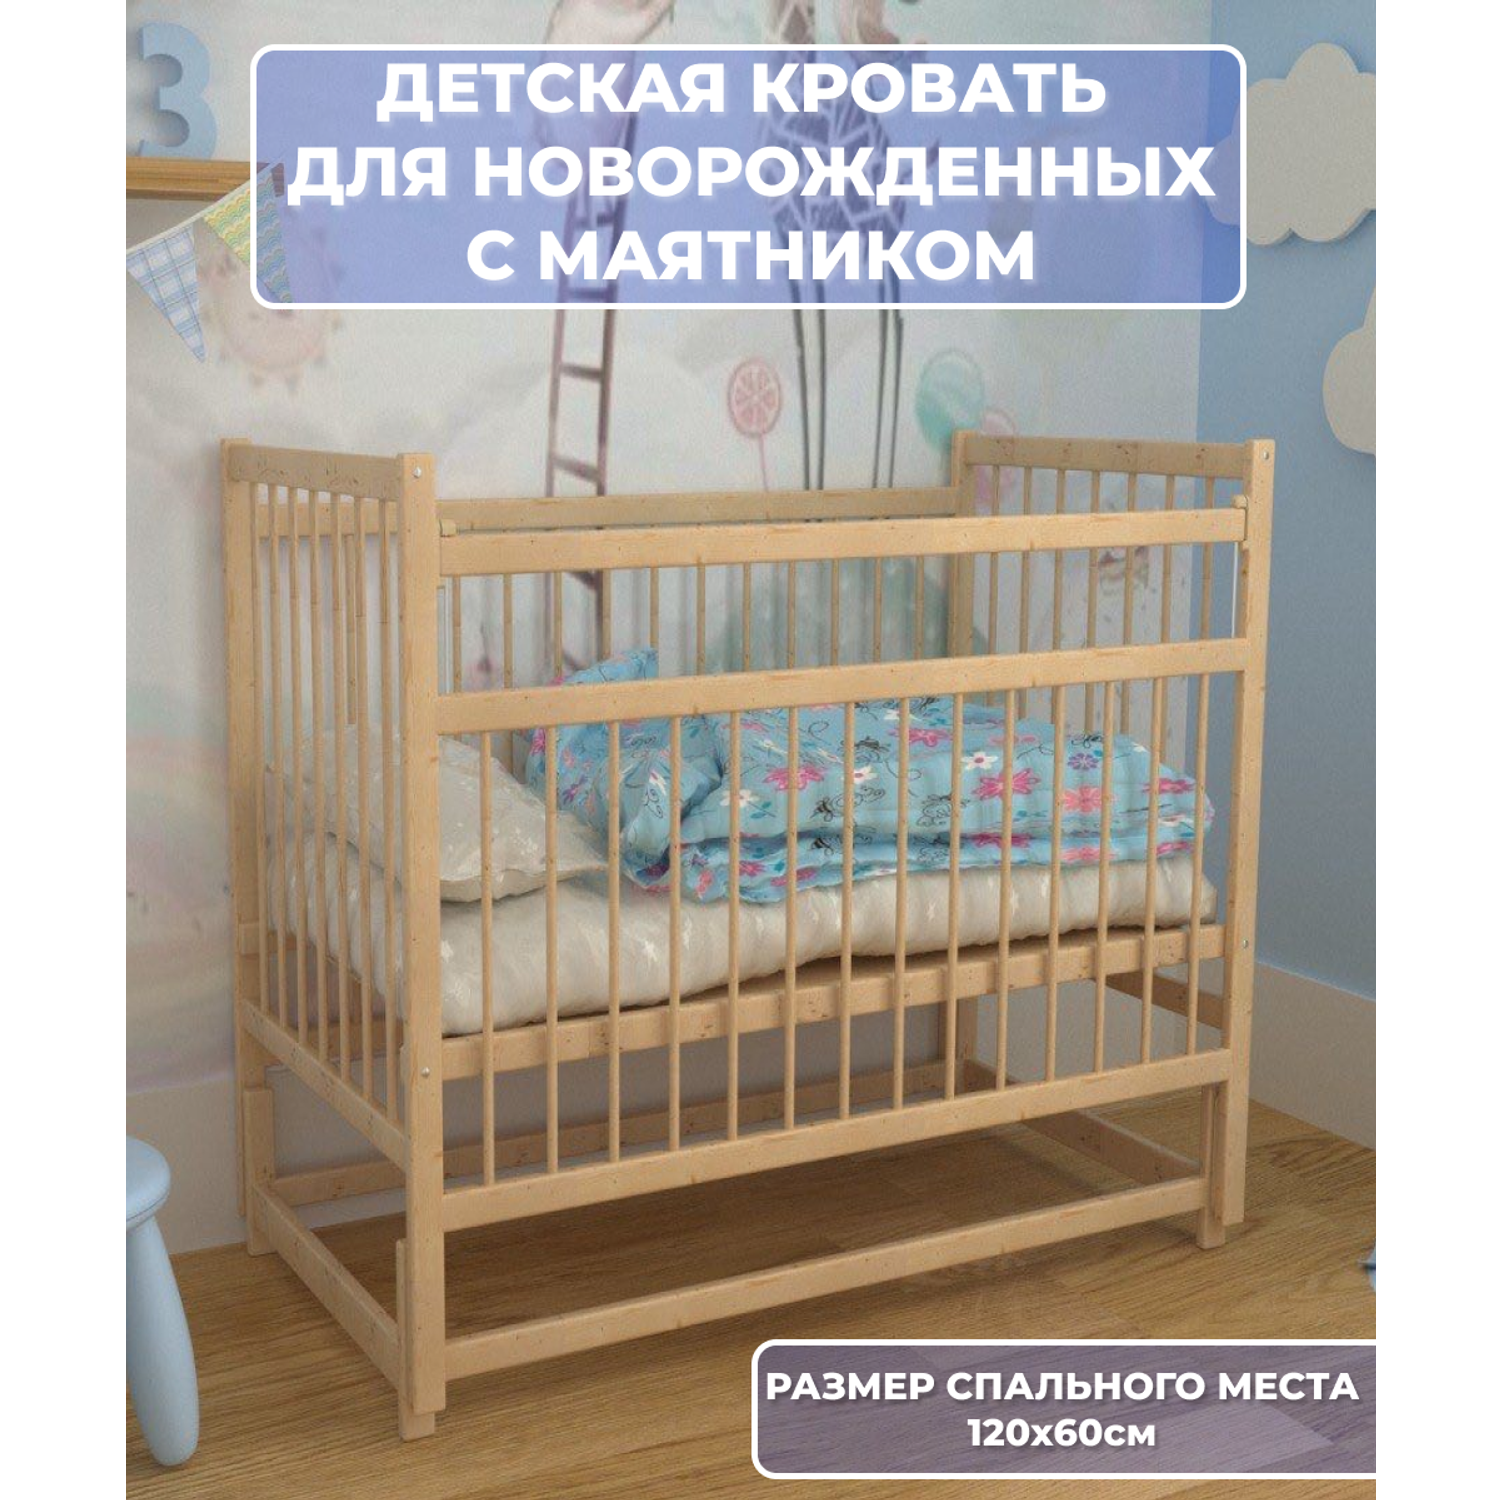 Детская кроватка Moms charm, продольный маятник (бежевый) - фото 1